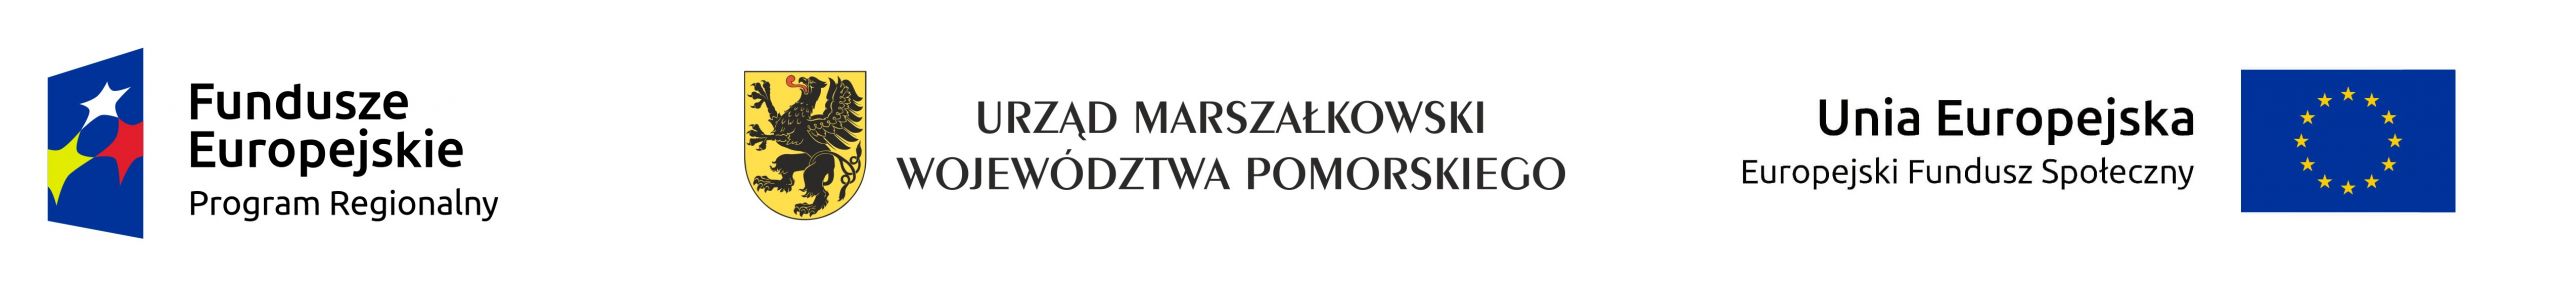 Logo Fundusze Europejskie Program Regionalny, Urząd Marszałkowski Województwa Pomorskiego, Unia Europejska Europejski Fundusz Społeczny